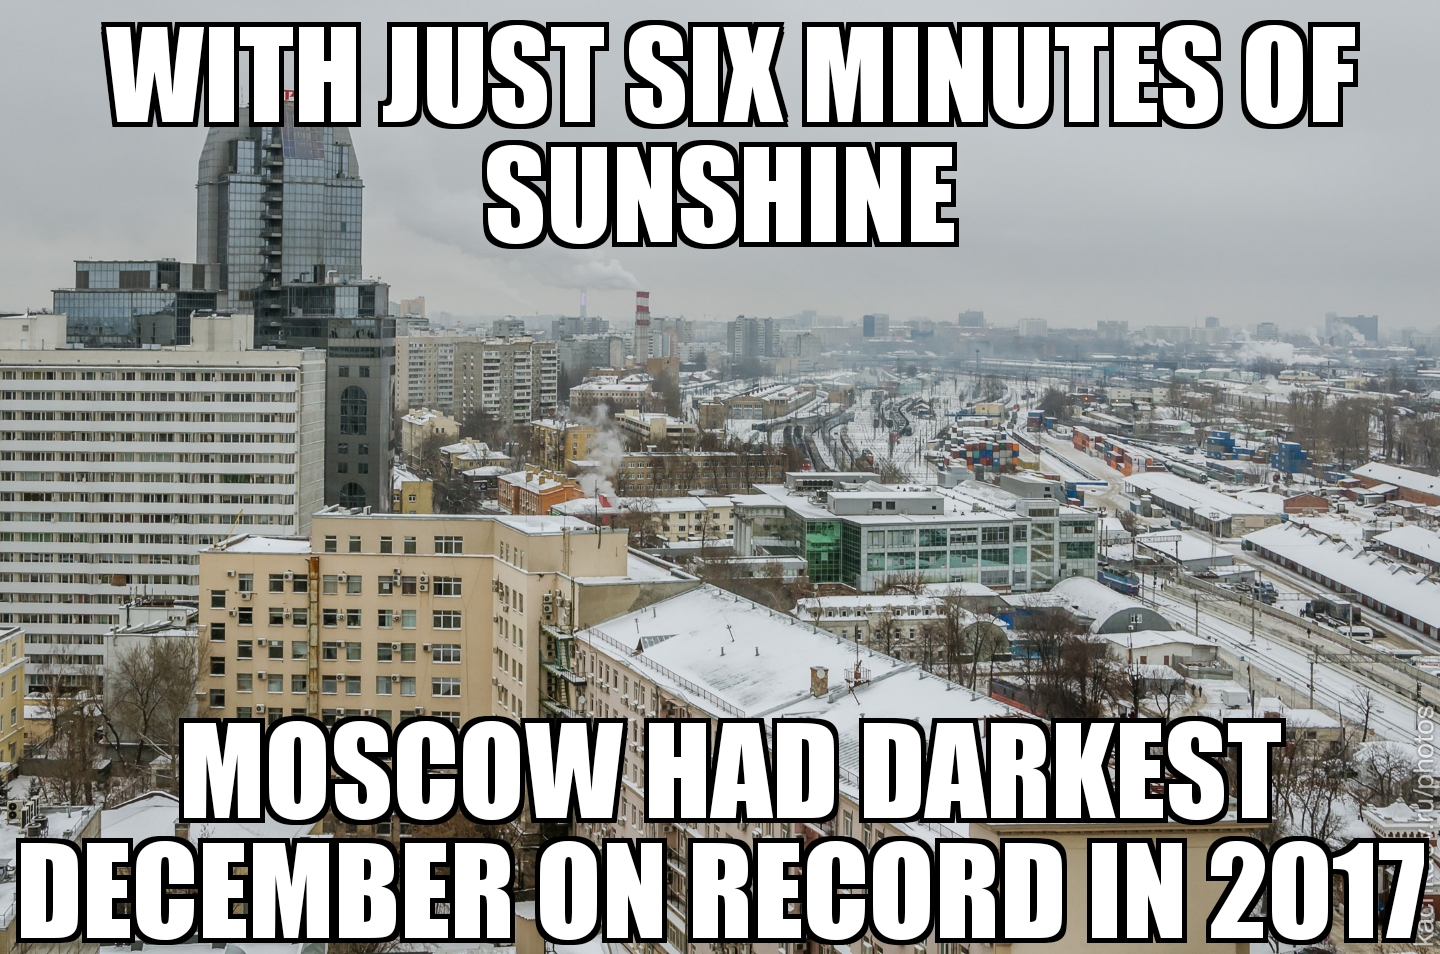 Moscow’s darkest December